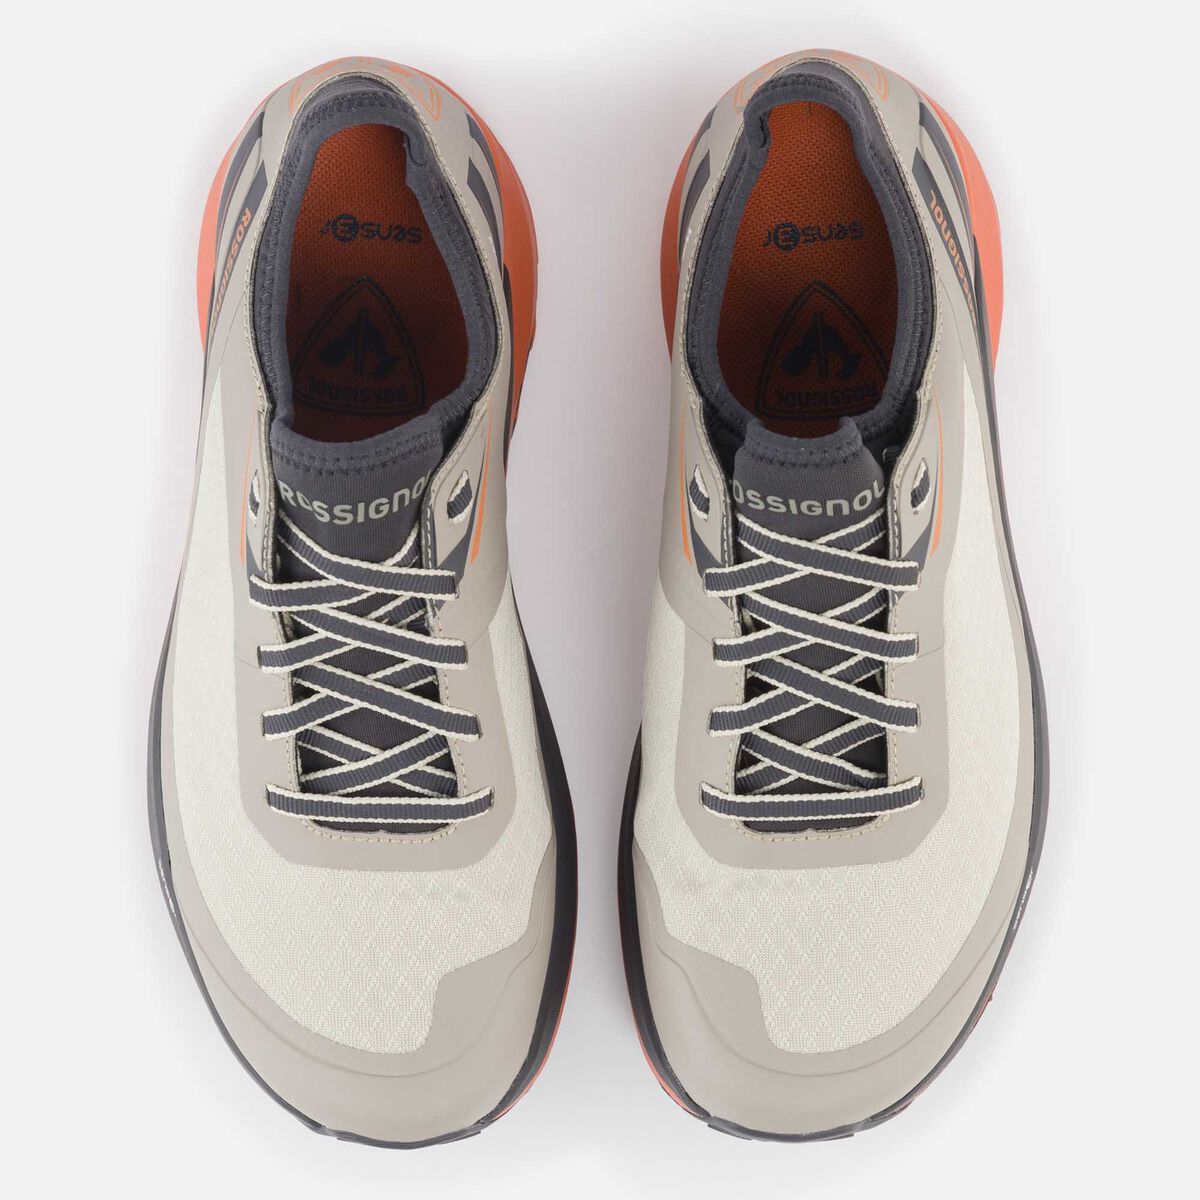 Men's khaki waterproof Active outdoor shoes